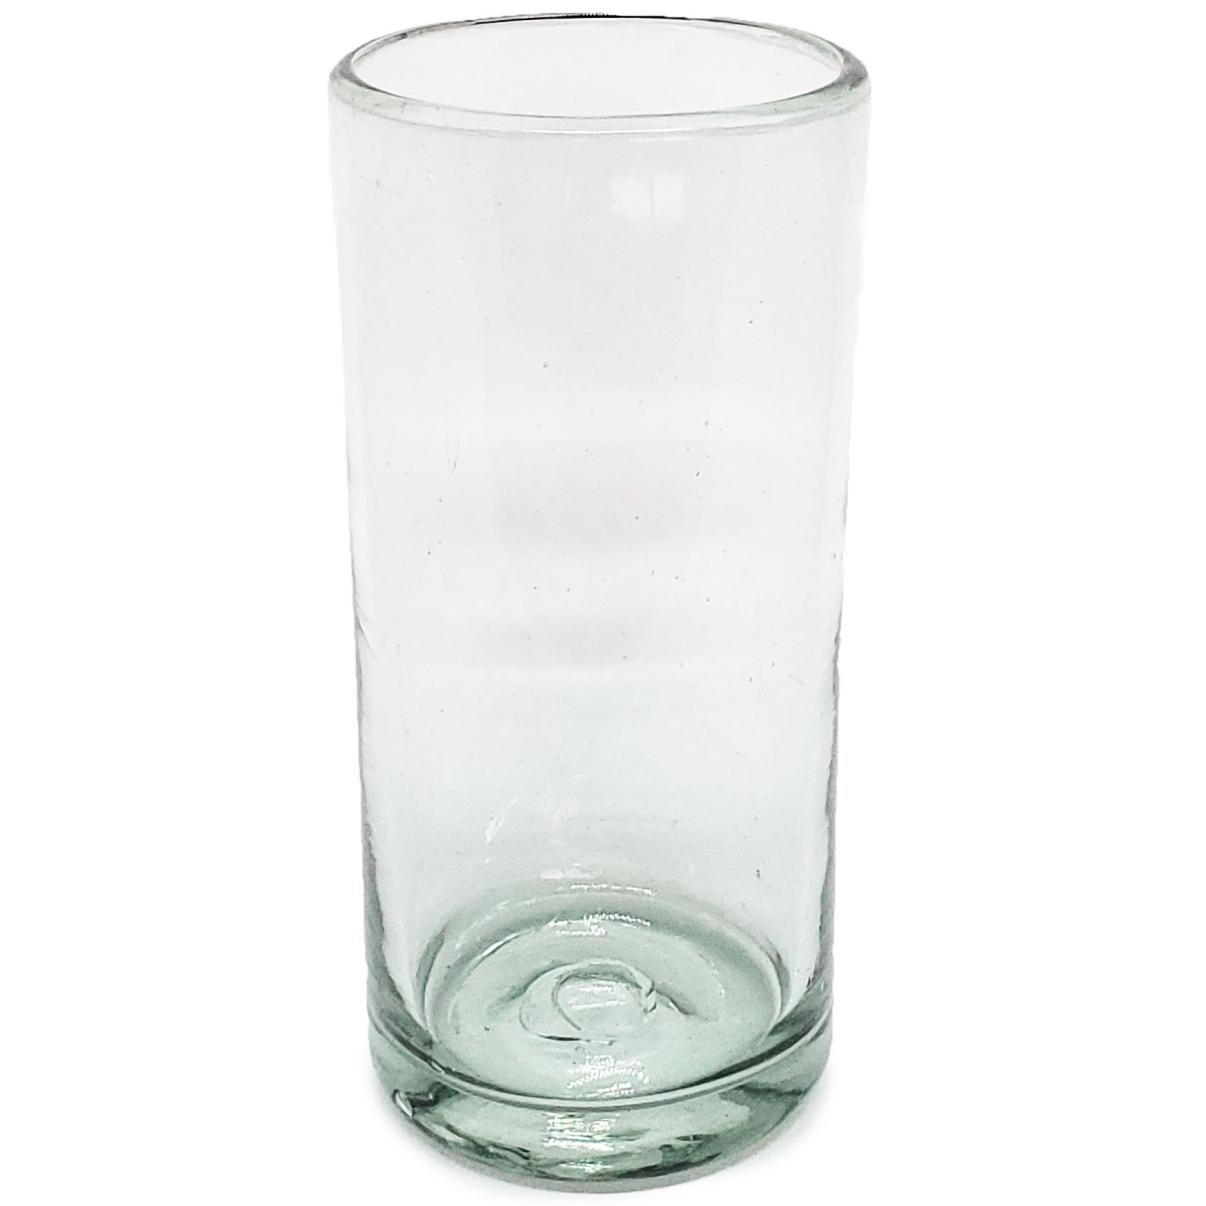 Vasos de Vidrio Soplado al Mayoreo / vasos Jumbo transparentes / Éste clásico juego de vasos jumbo está hecho con vidrio reciclado. Contiene pequeñas burbujas atrapadas en el vaso.